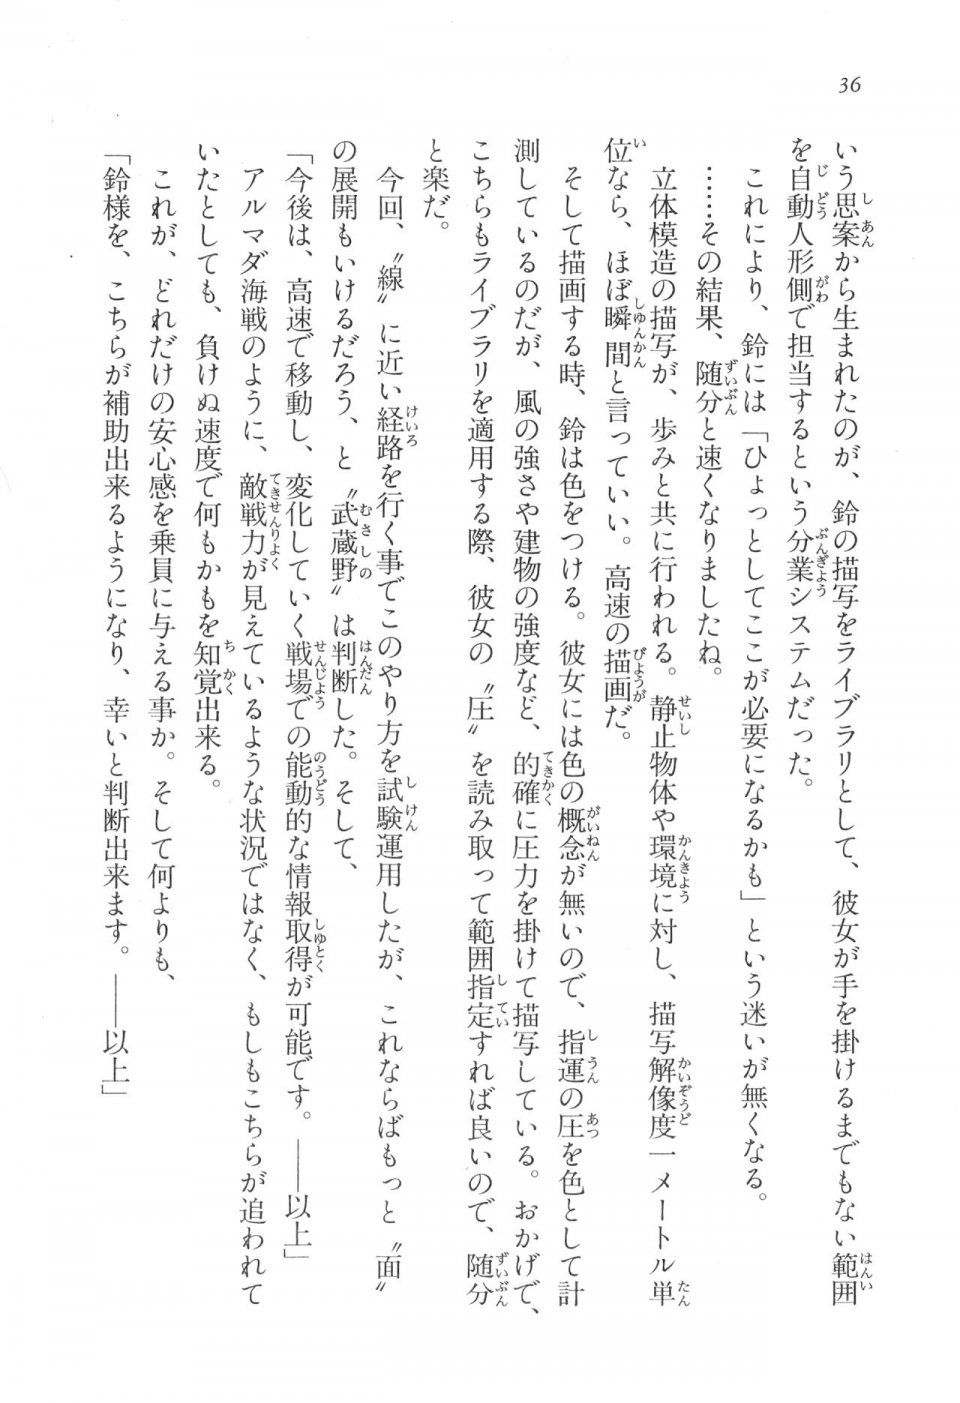 Kyoukai Senjou no Horizon LN Vol 17(7B) - Photo #36